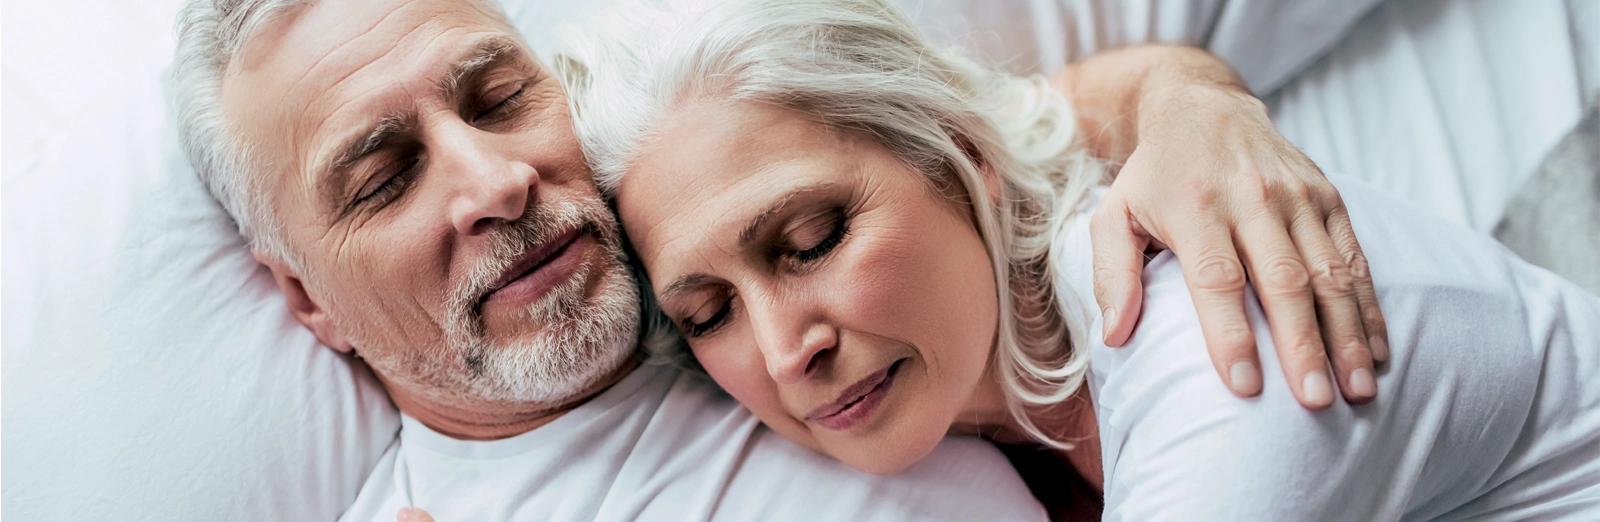 older-couple-sleeping-1600x522.webp